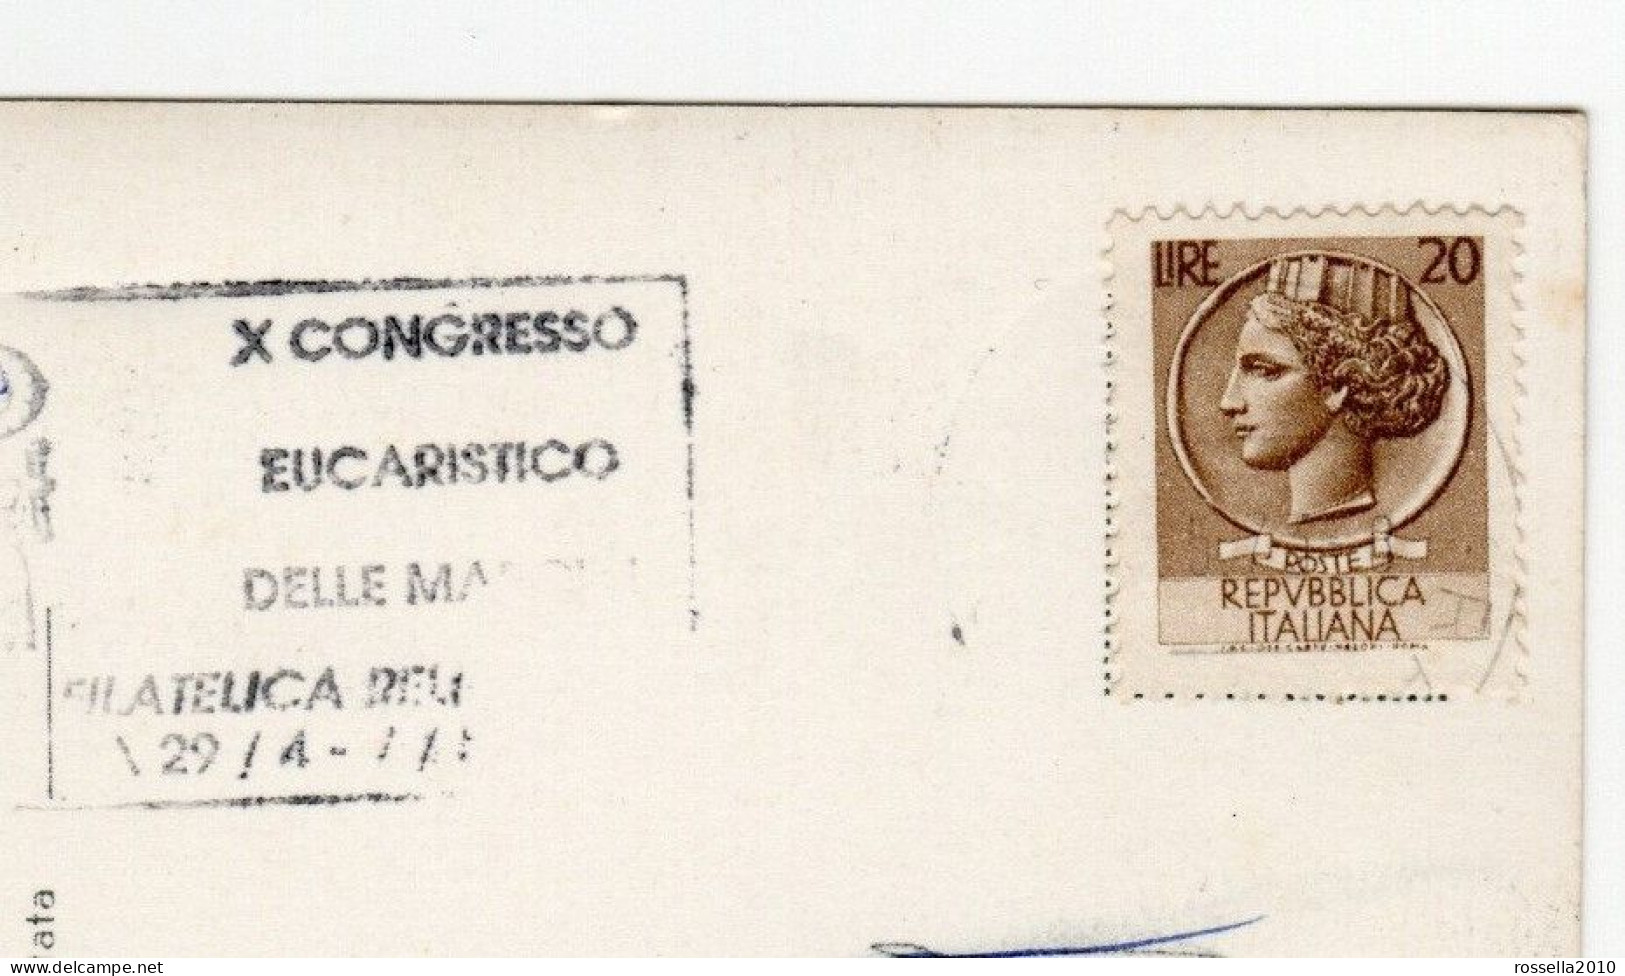 CARTOLINA ITALIA 1989 SENIGALLIA SALUTI VEDUTINE ANNULLO X CONGRESSO EUCARISTICO MARCHE Italy Postcard ITALIEN AK - Senigallia